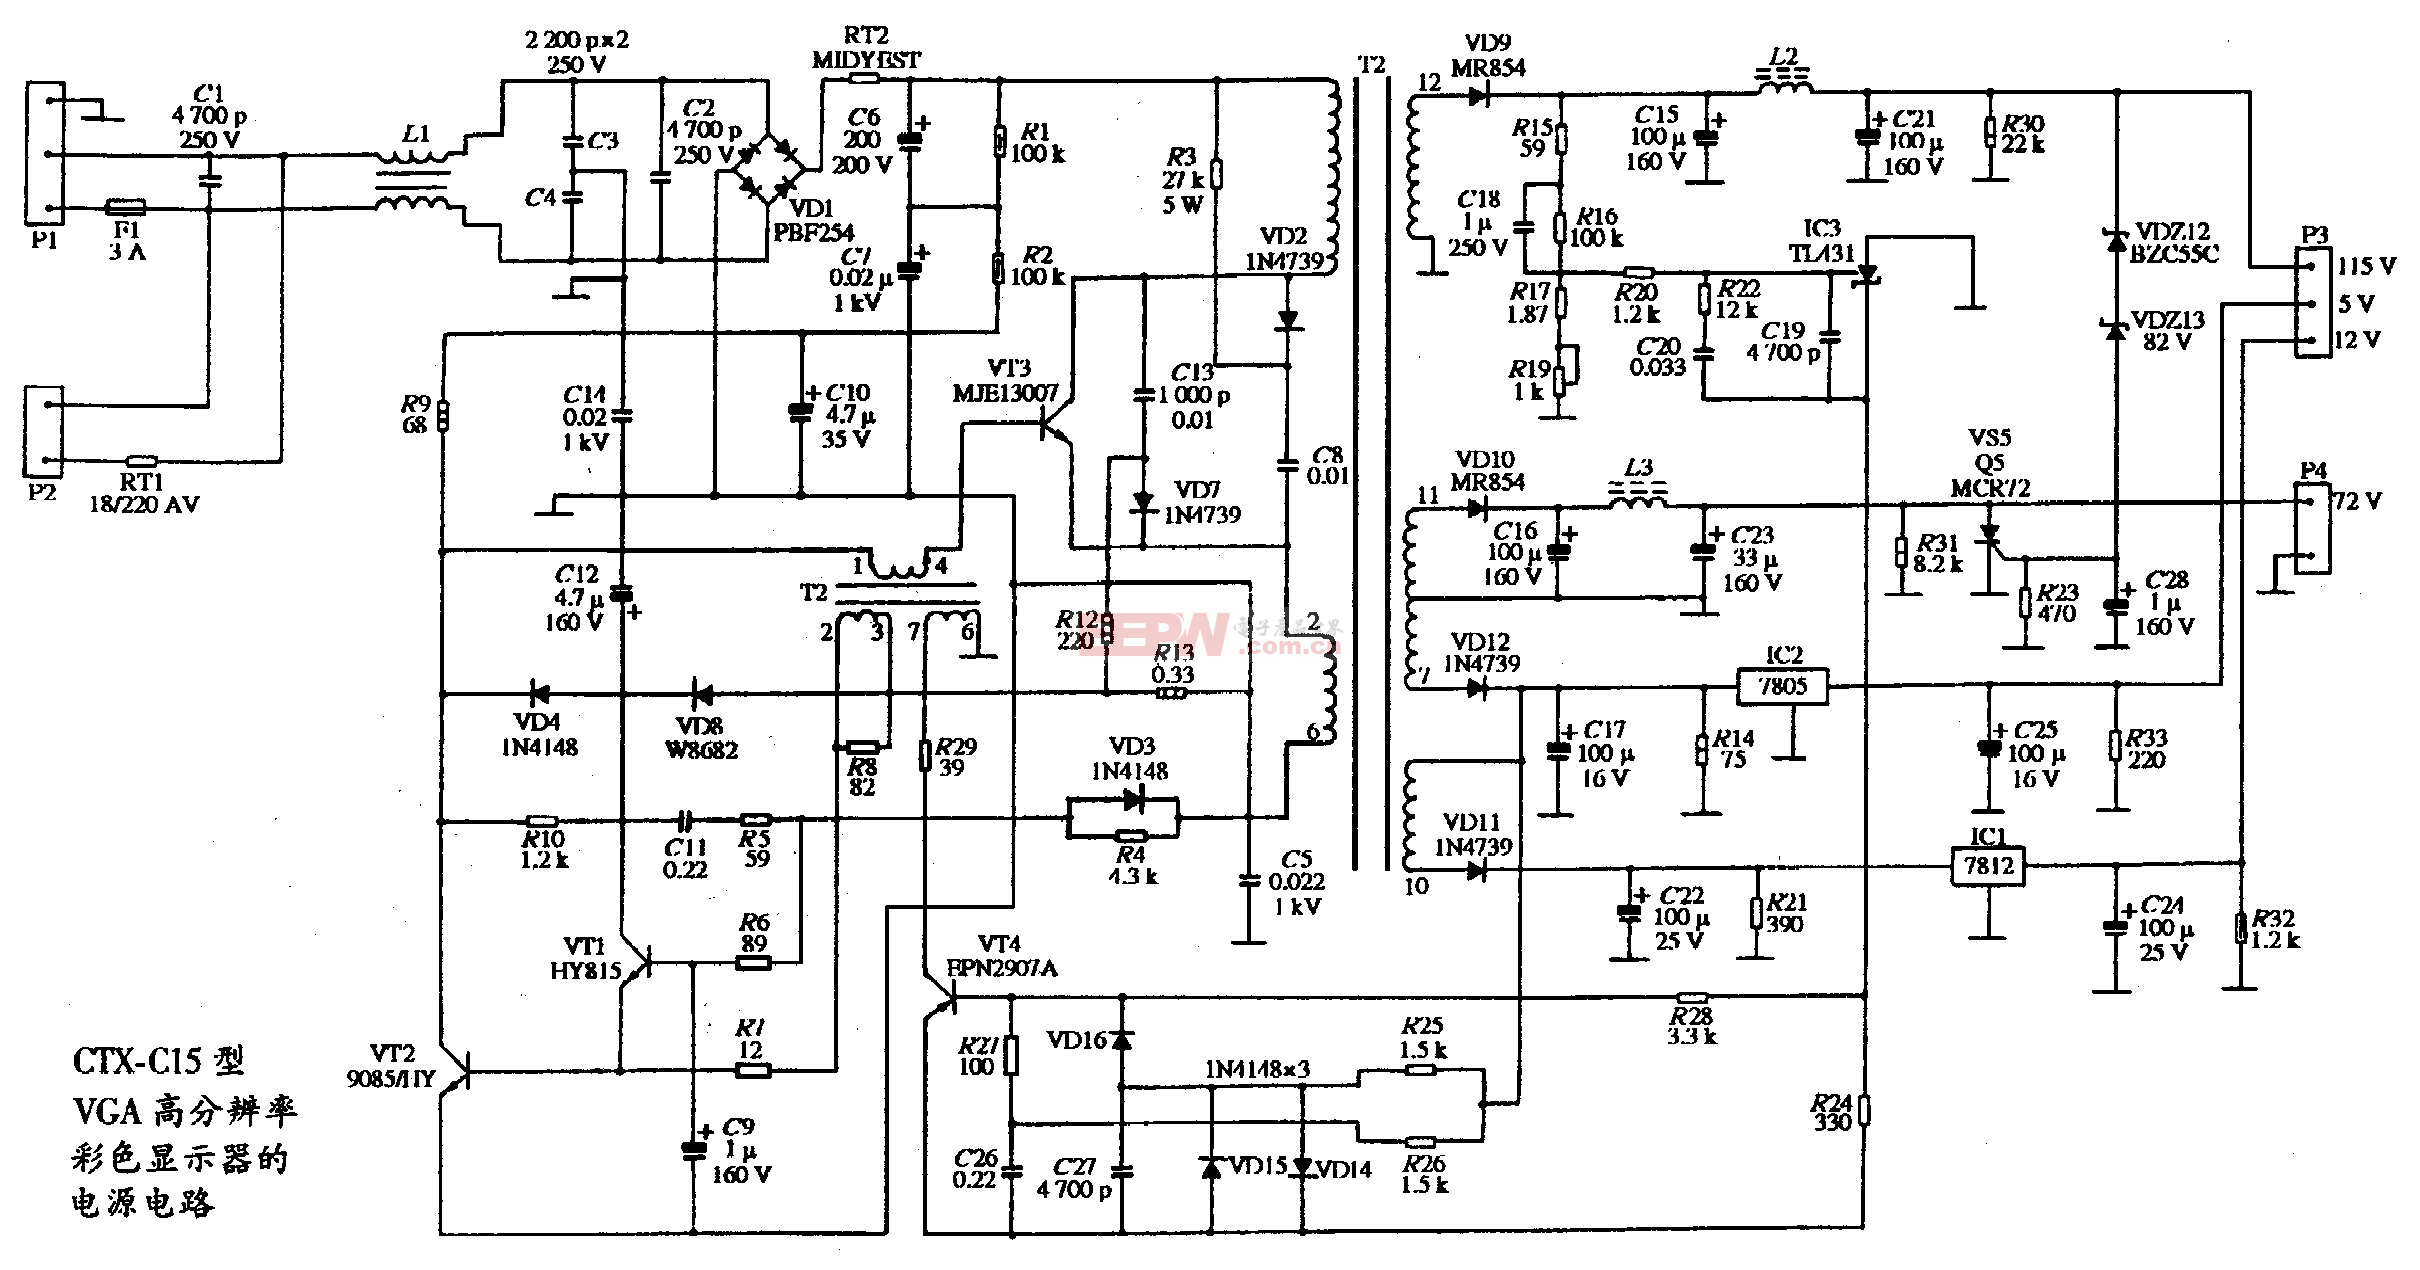 33、CTX-C15型VGA高分辨率彩色顯示器的電源電路圖